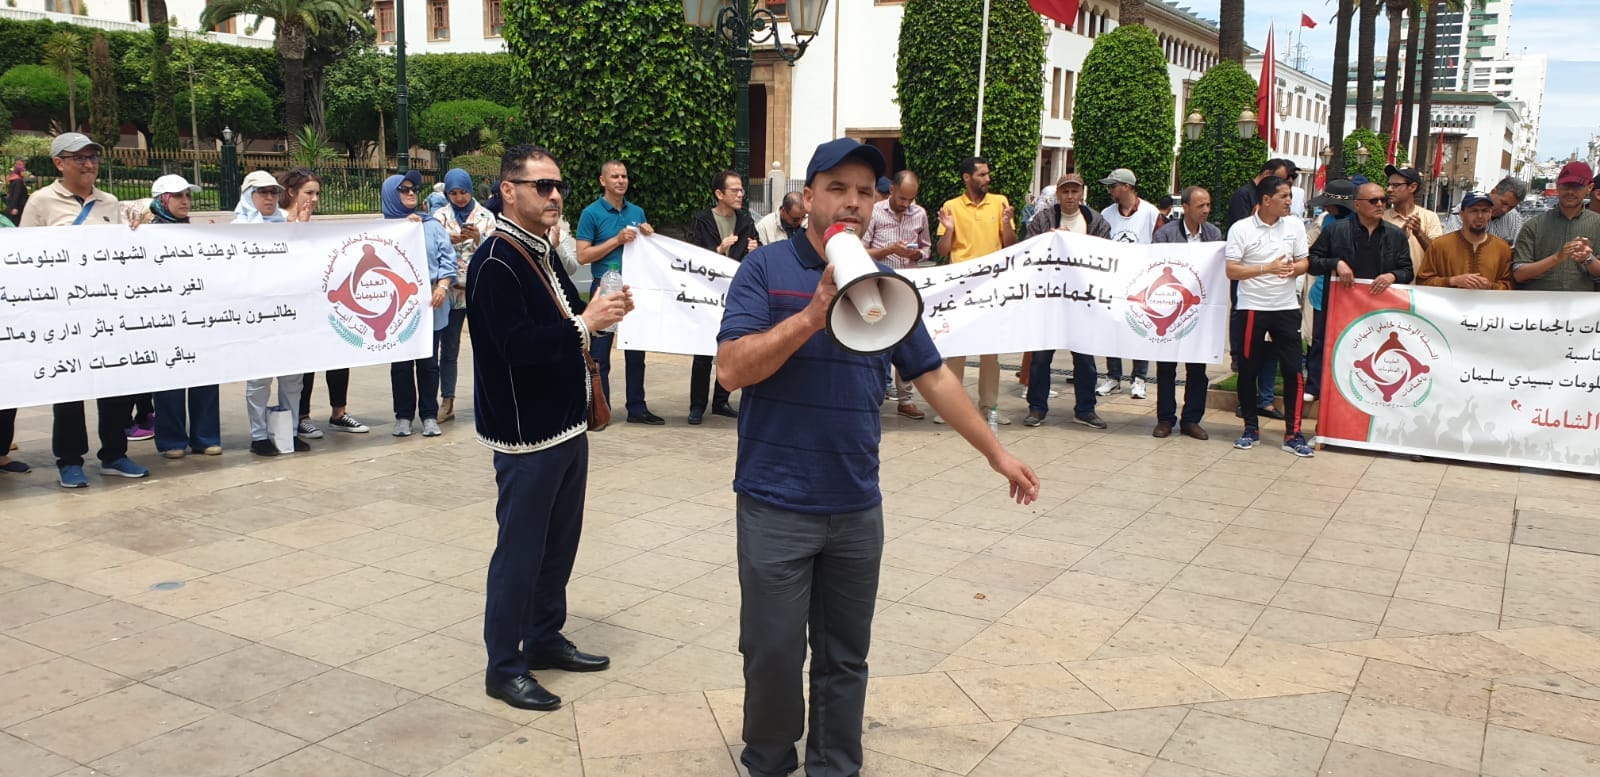 الأمن يفض احتجاجات حاملي الشهادات بالجماعات أمام وزارة الداخلية